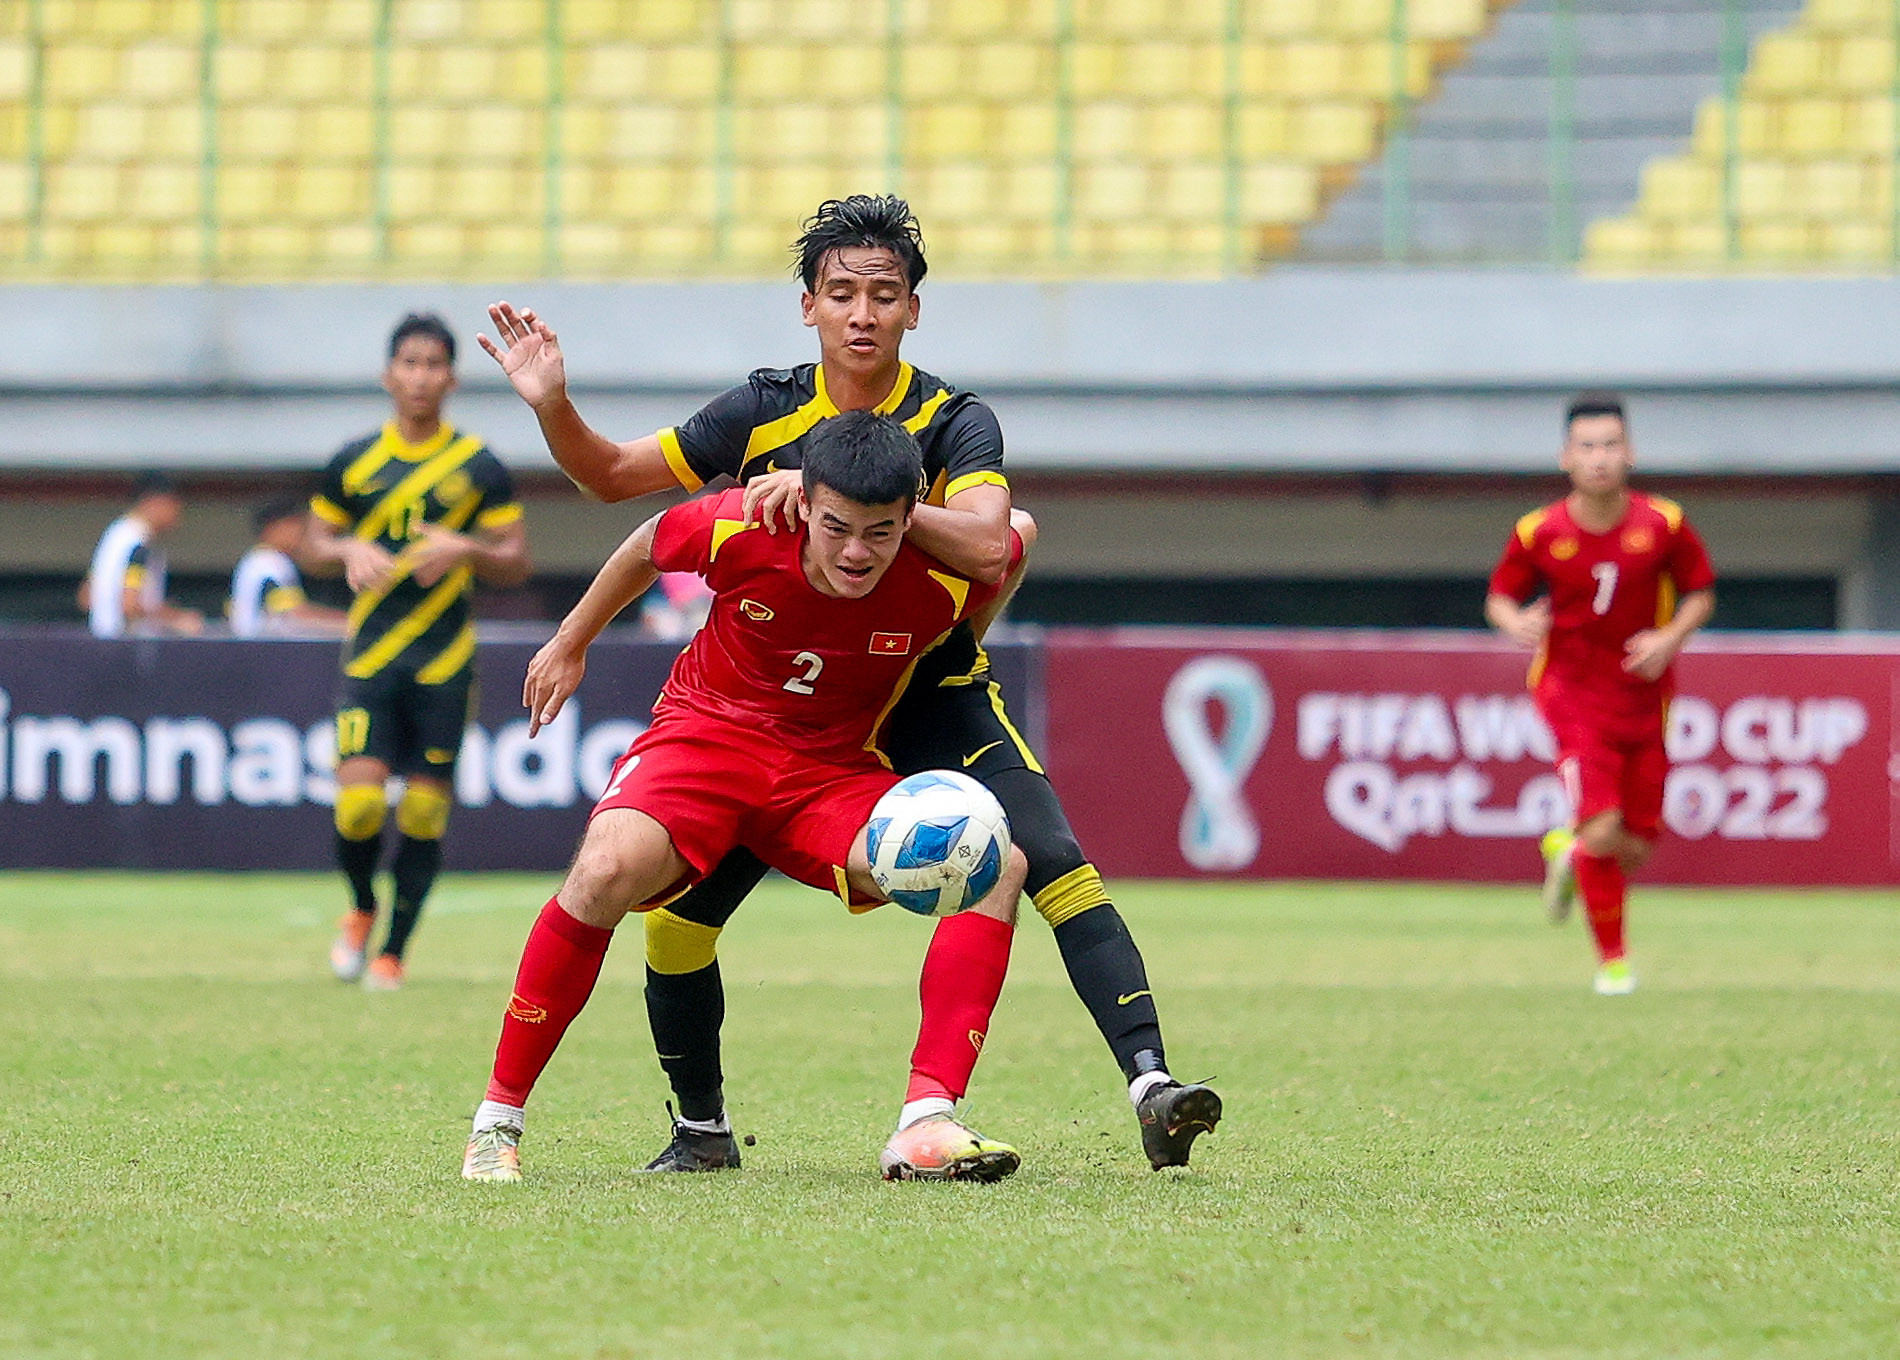 U19 Việt Nam thua đậm U19 Malaysia: Tiếc với bài toán chưa lời giải